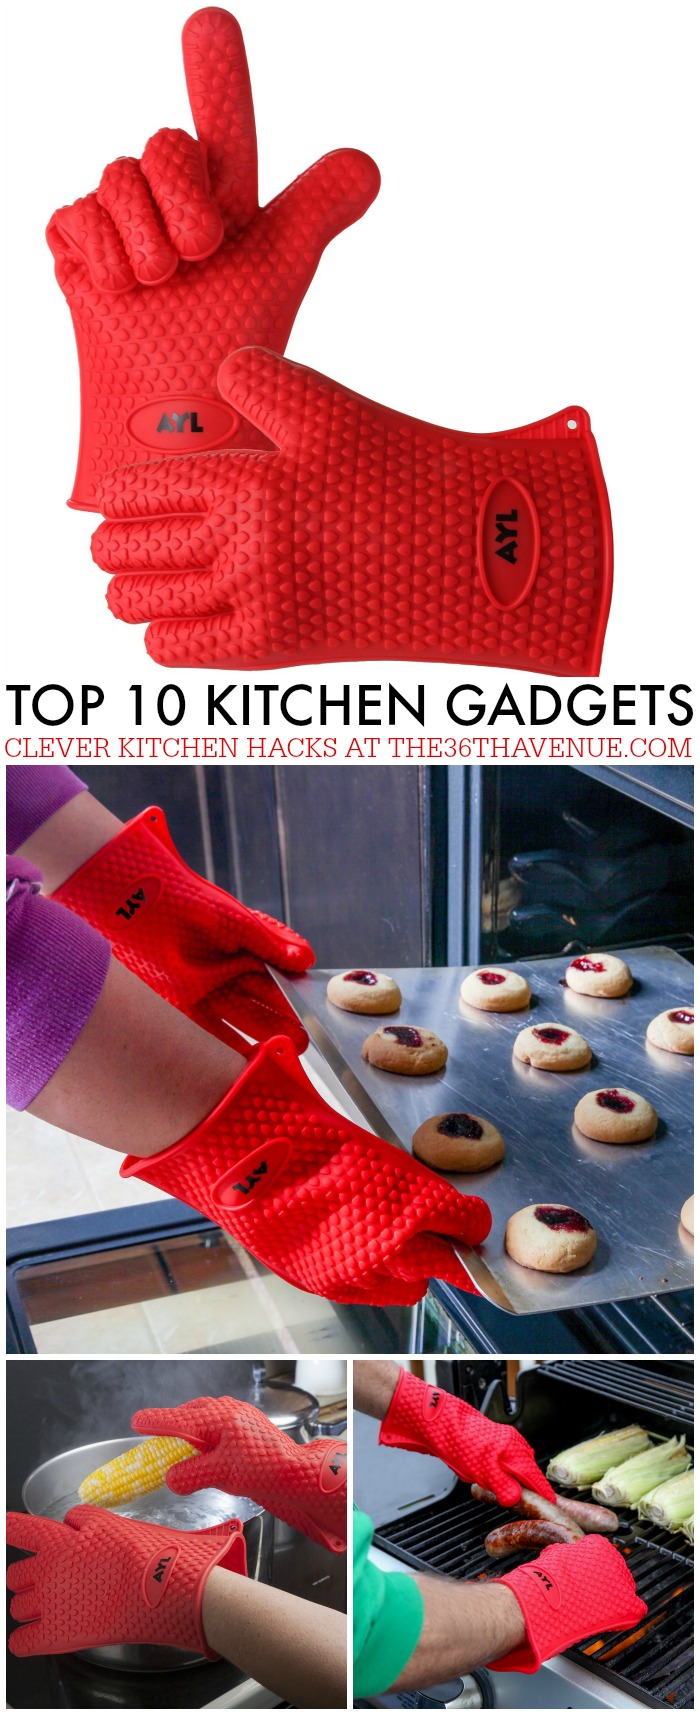 My Top 10 Kitchen Gadgets